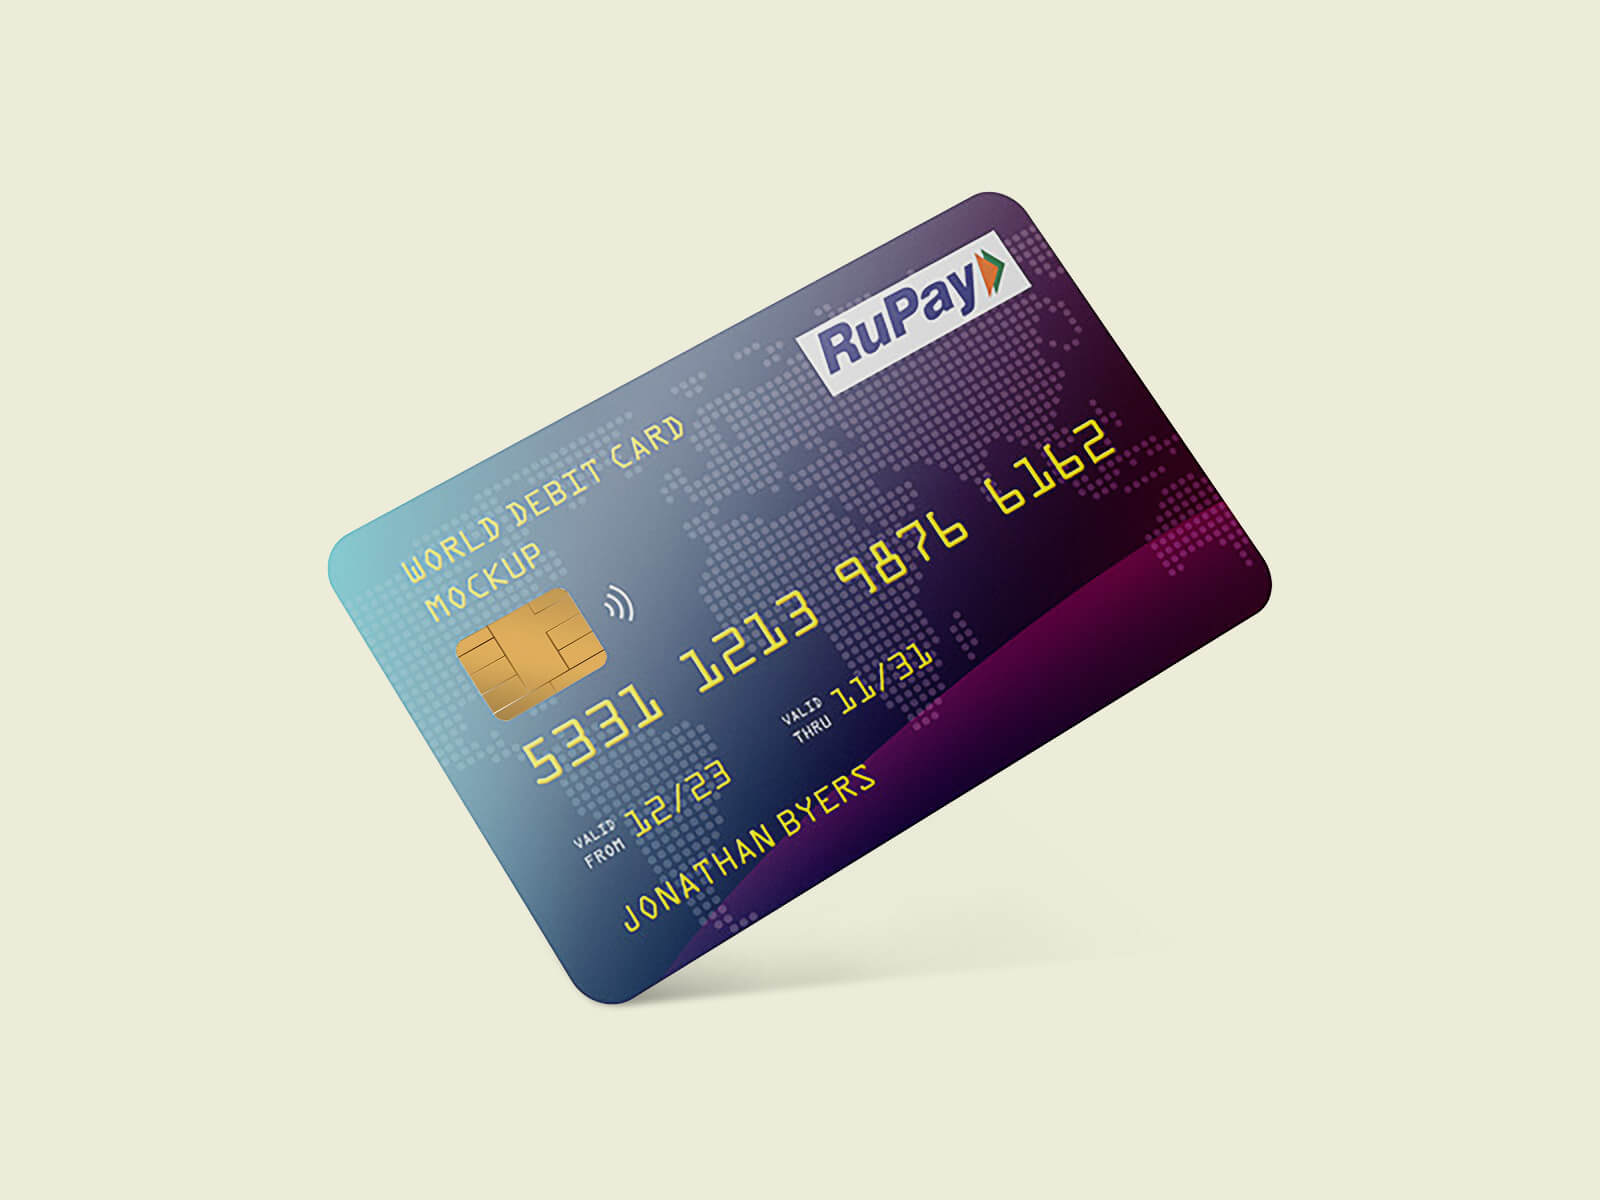 Kunststoff -Kredit-/Debitkartenmodelle